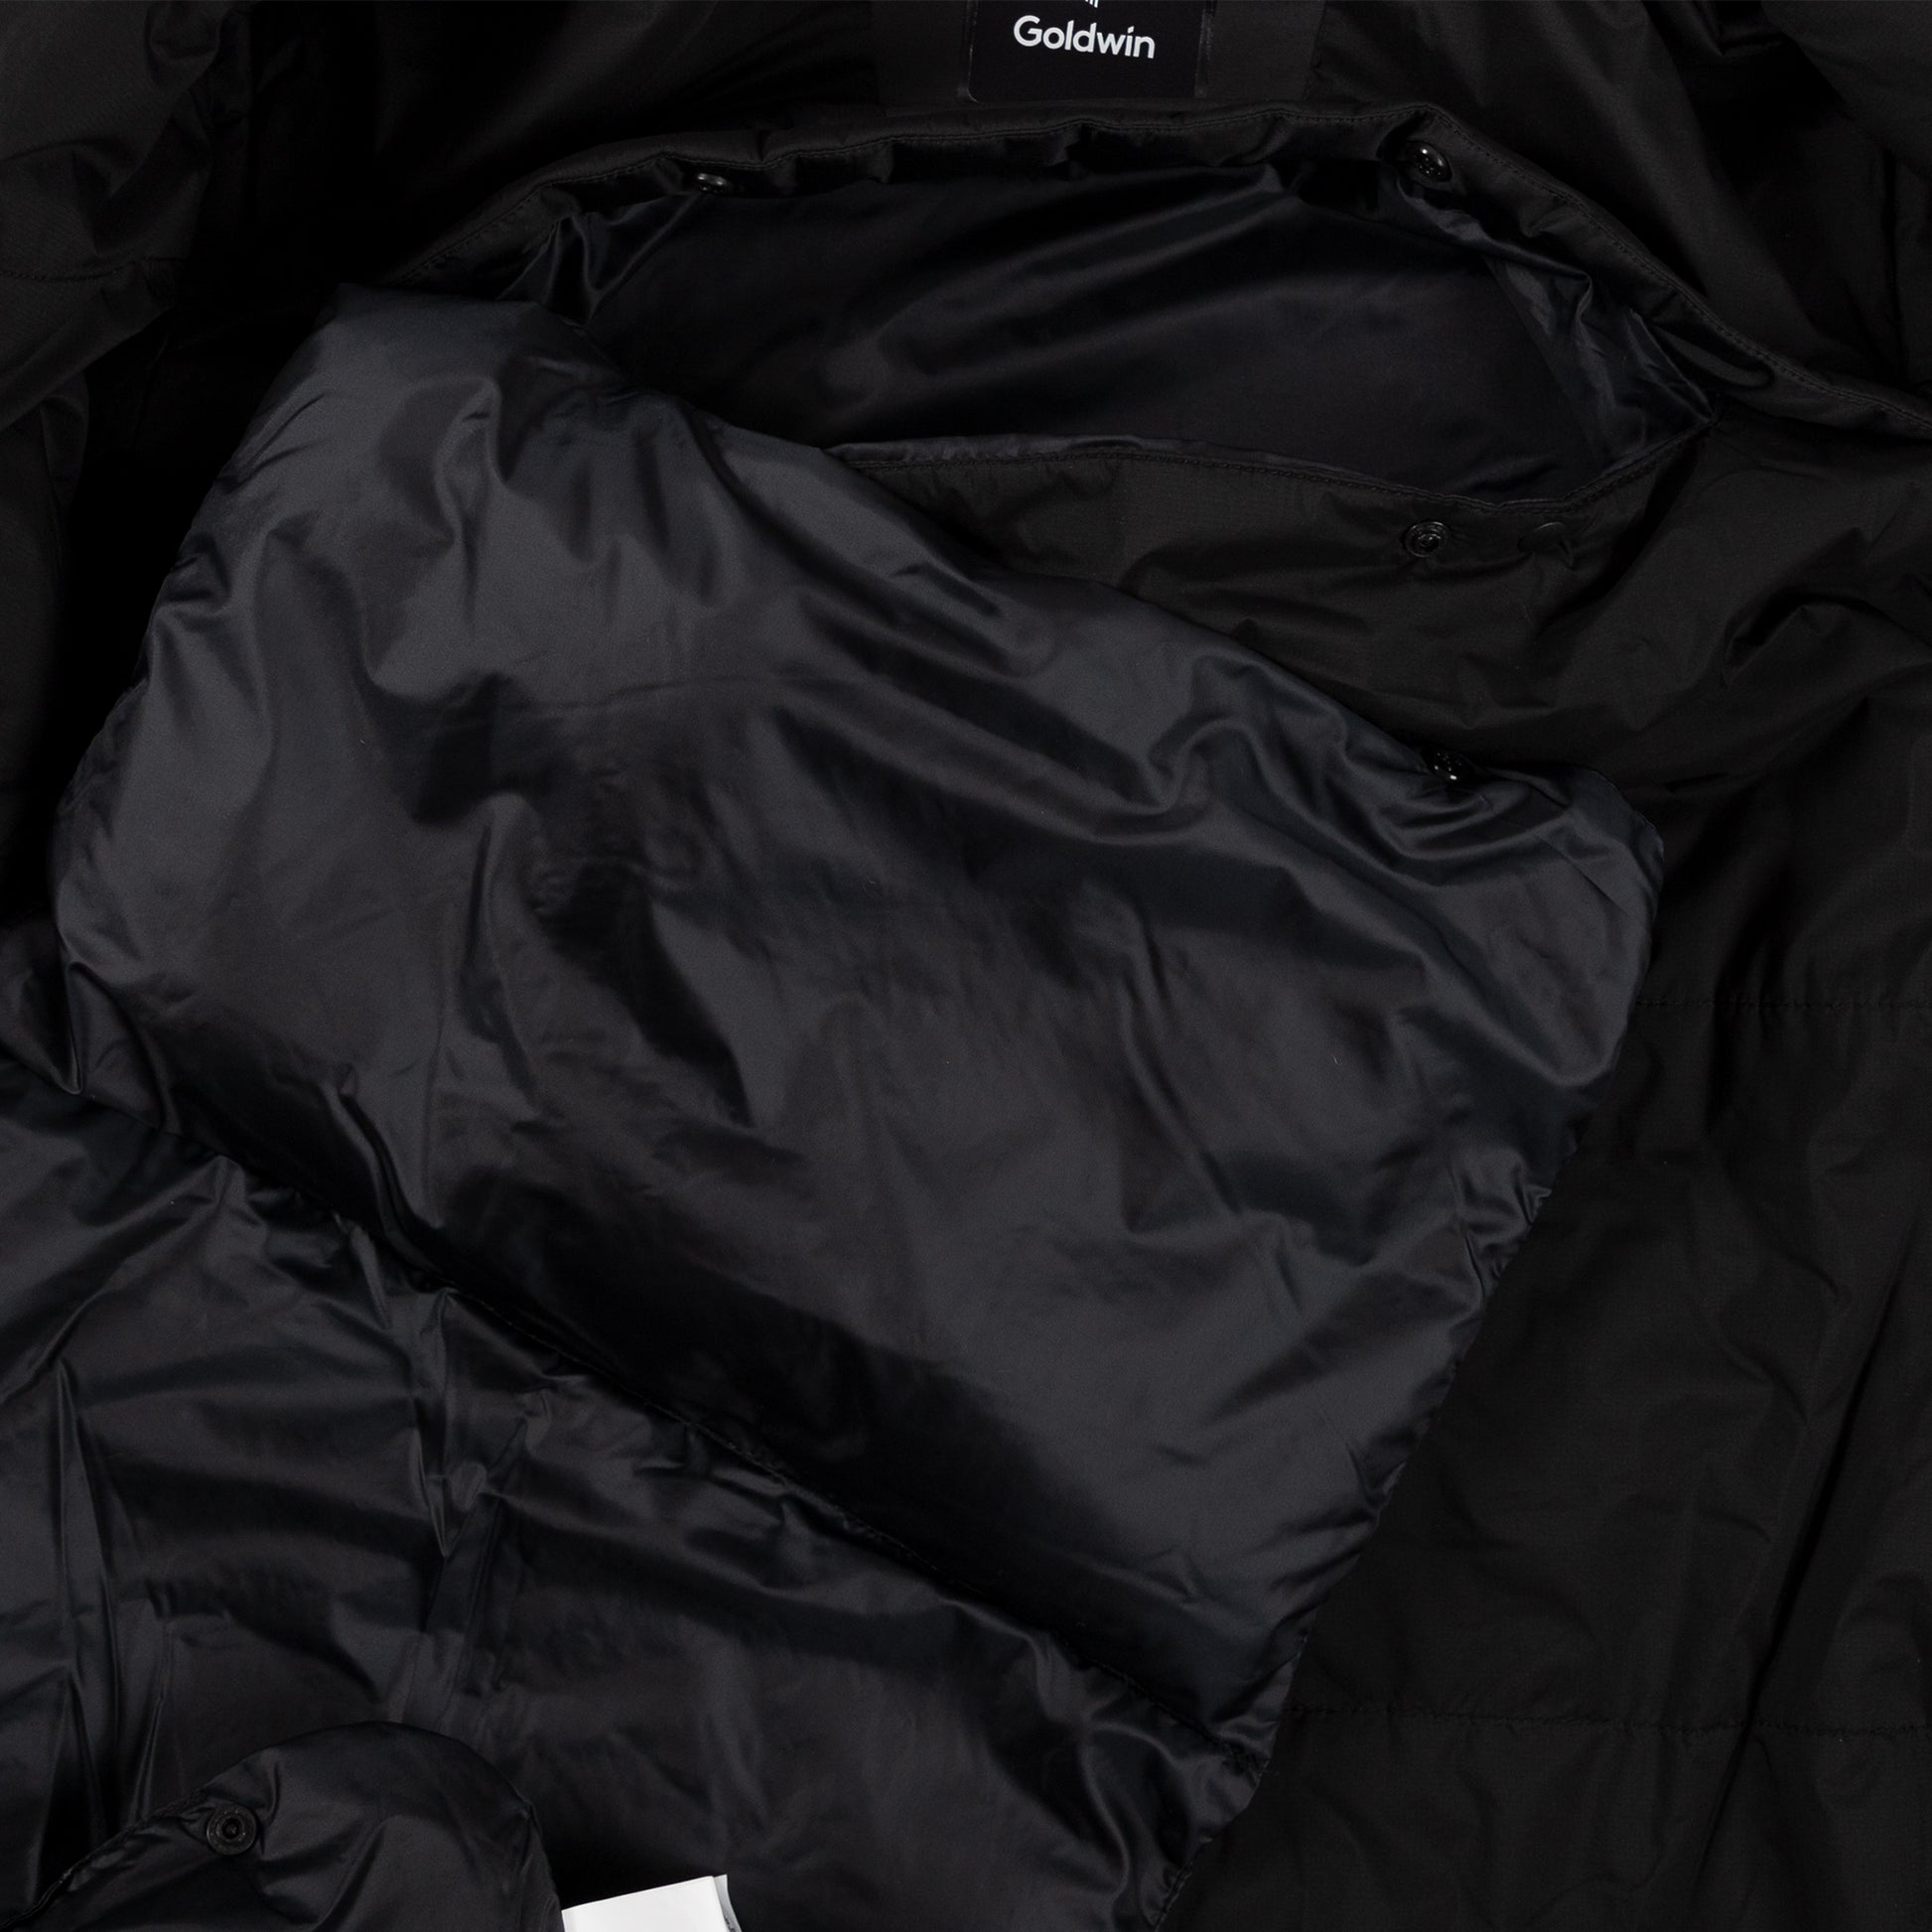 Goldwin Insulation Mountain Parka in Black hooded jacket sportswear all weather rain gear insert